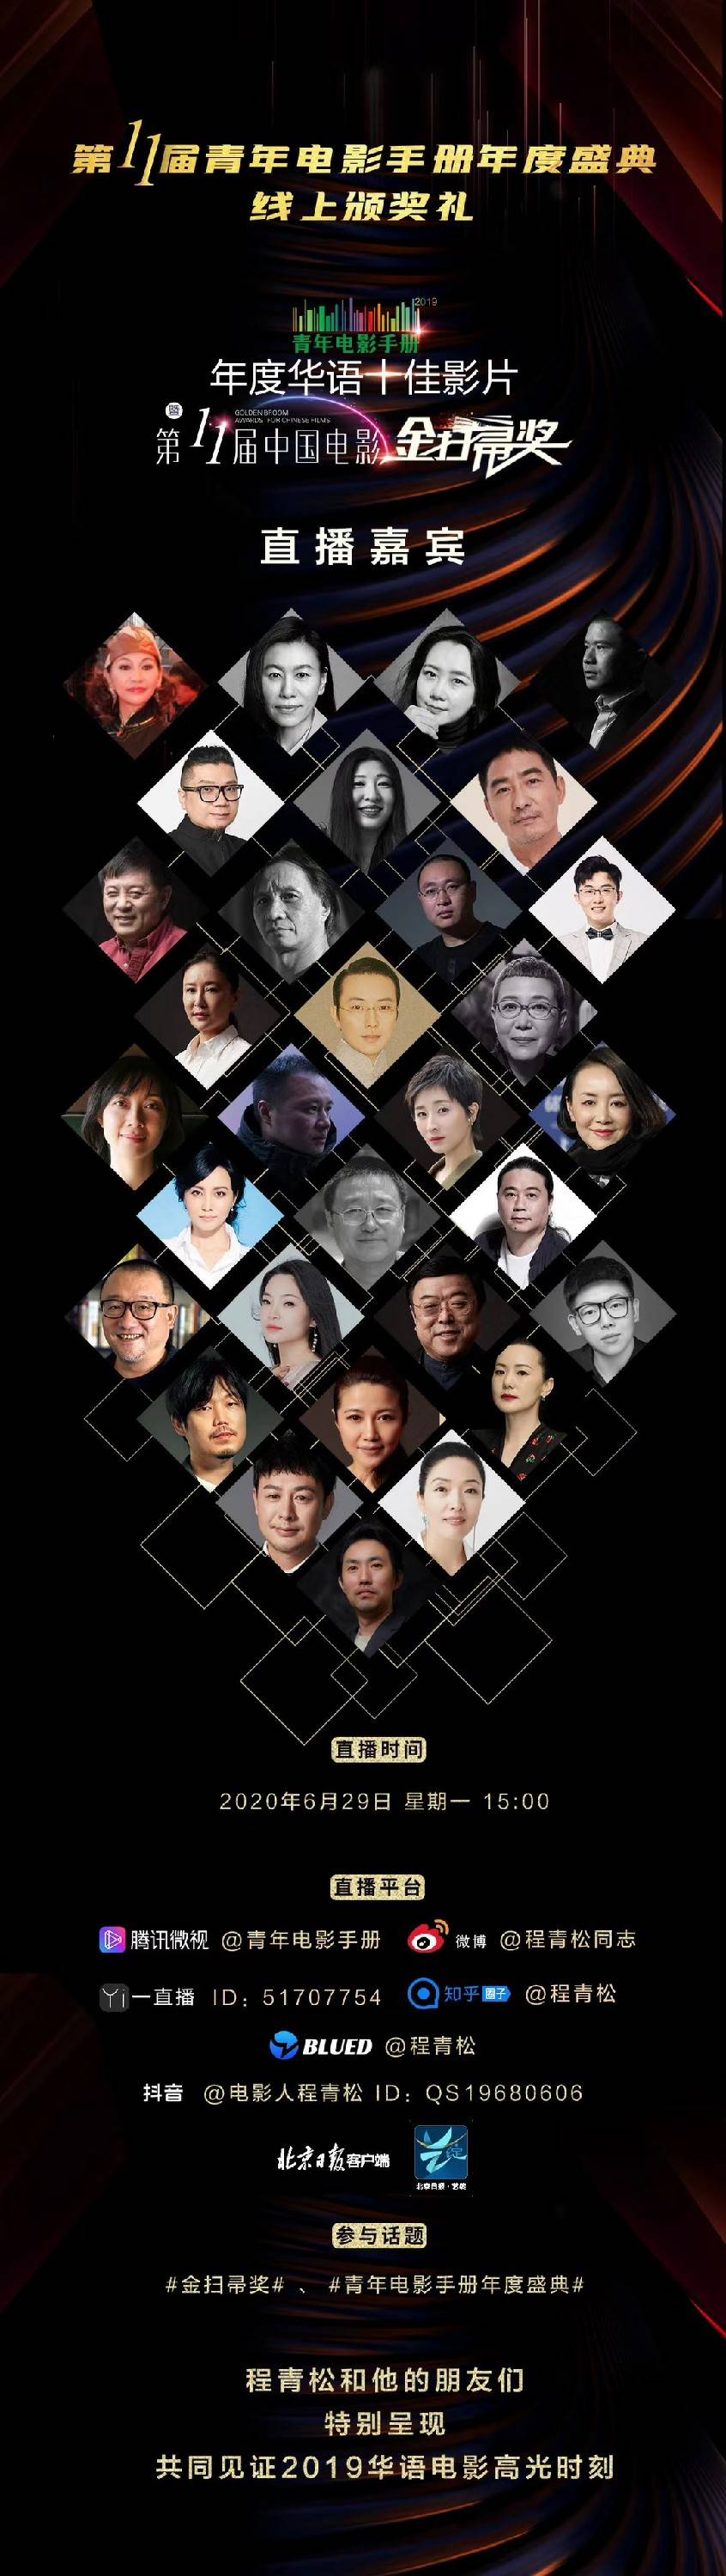 程青松和他的朋友们共同见证2019华语电影高光时刻